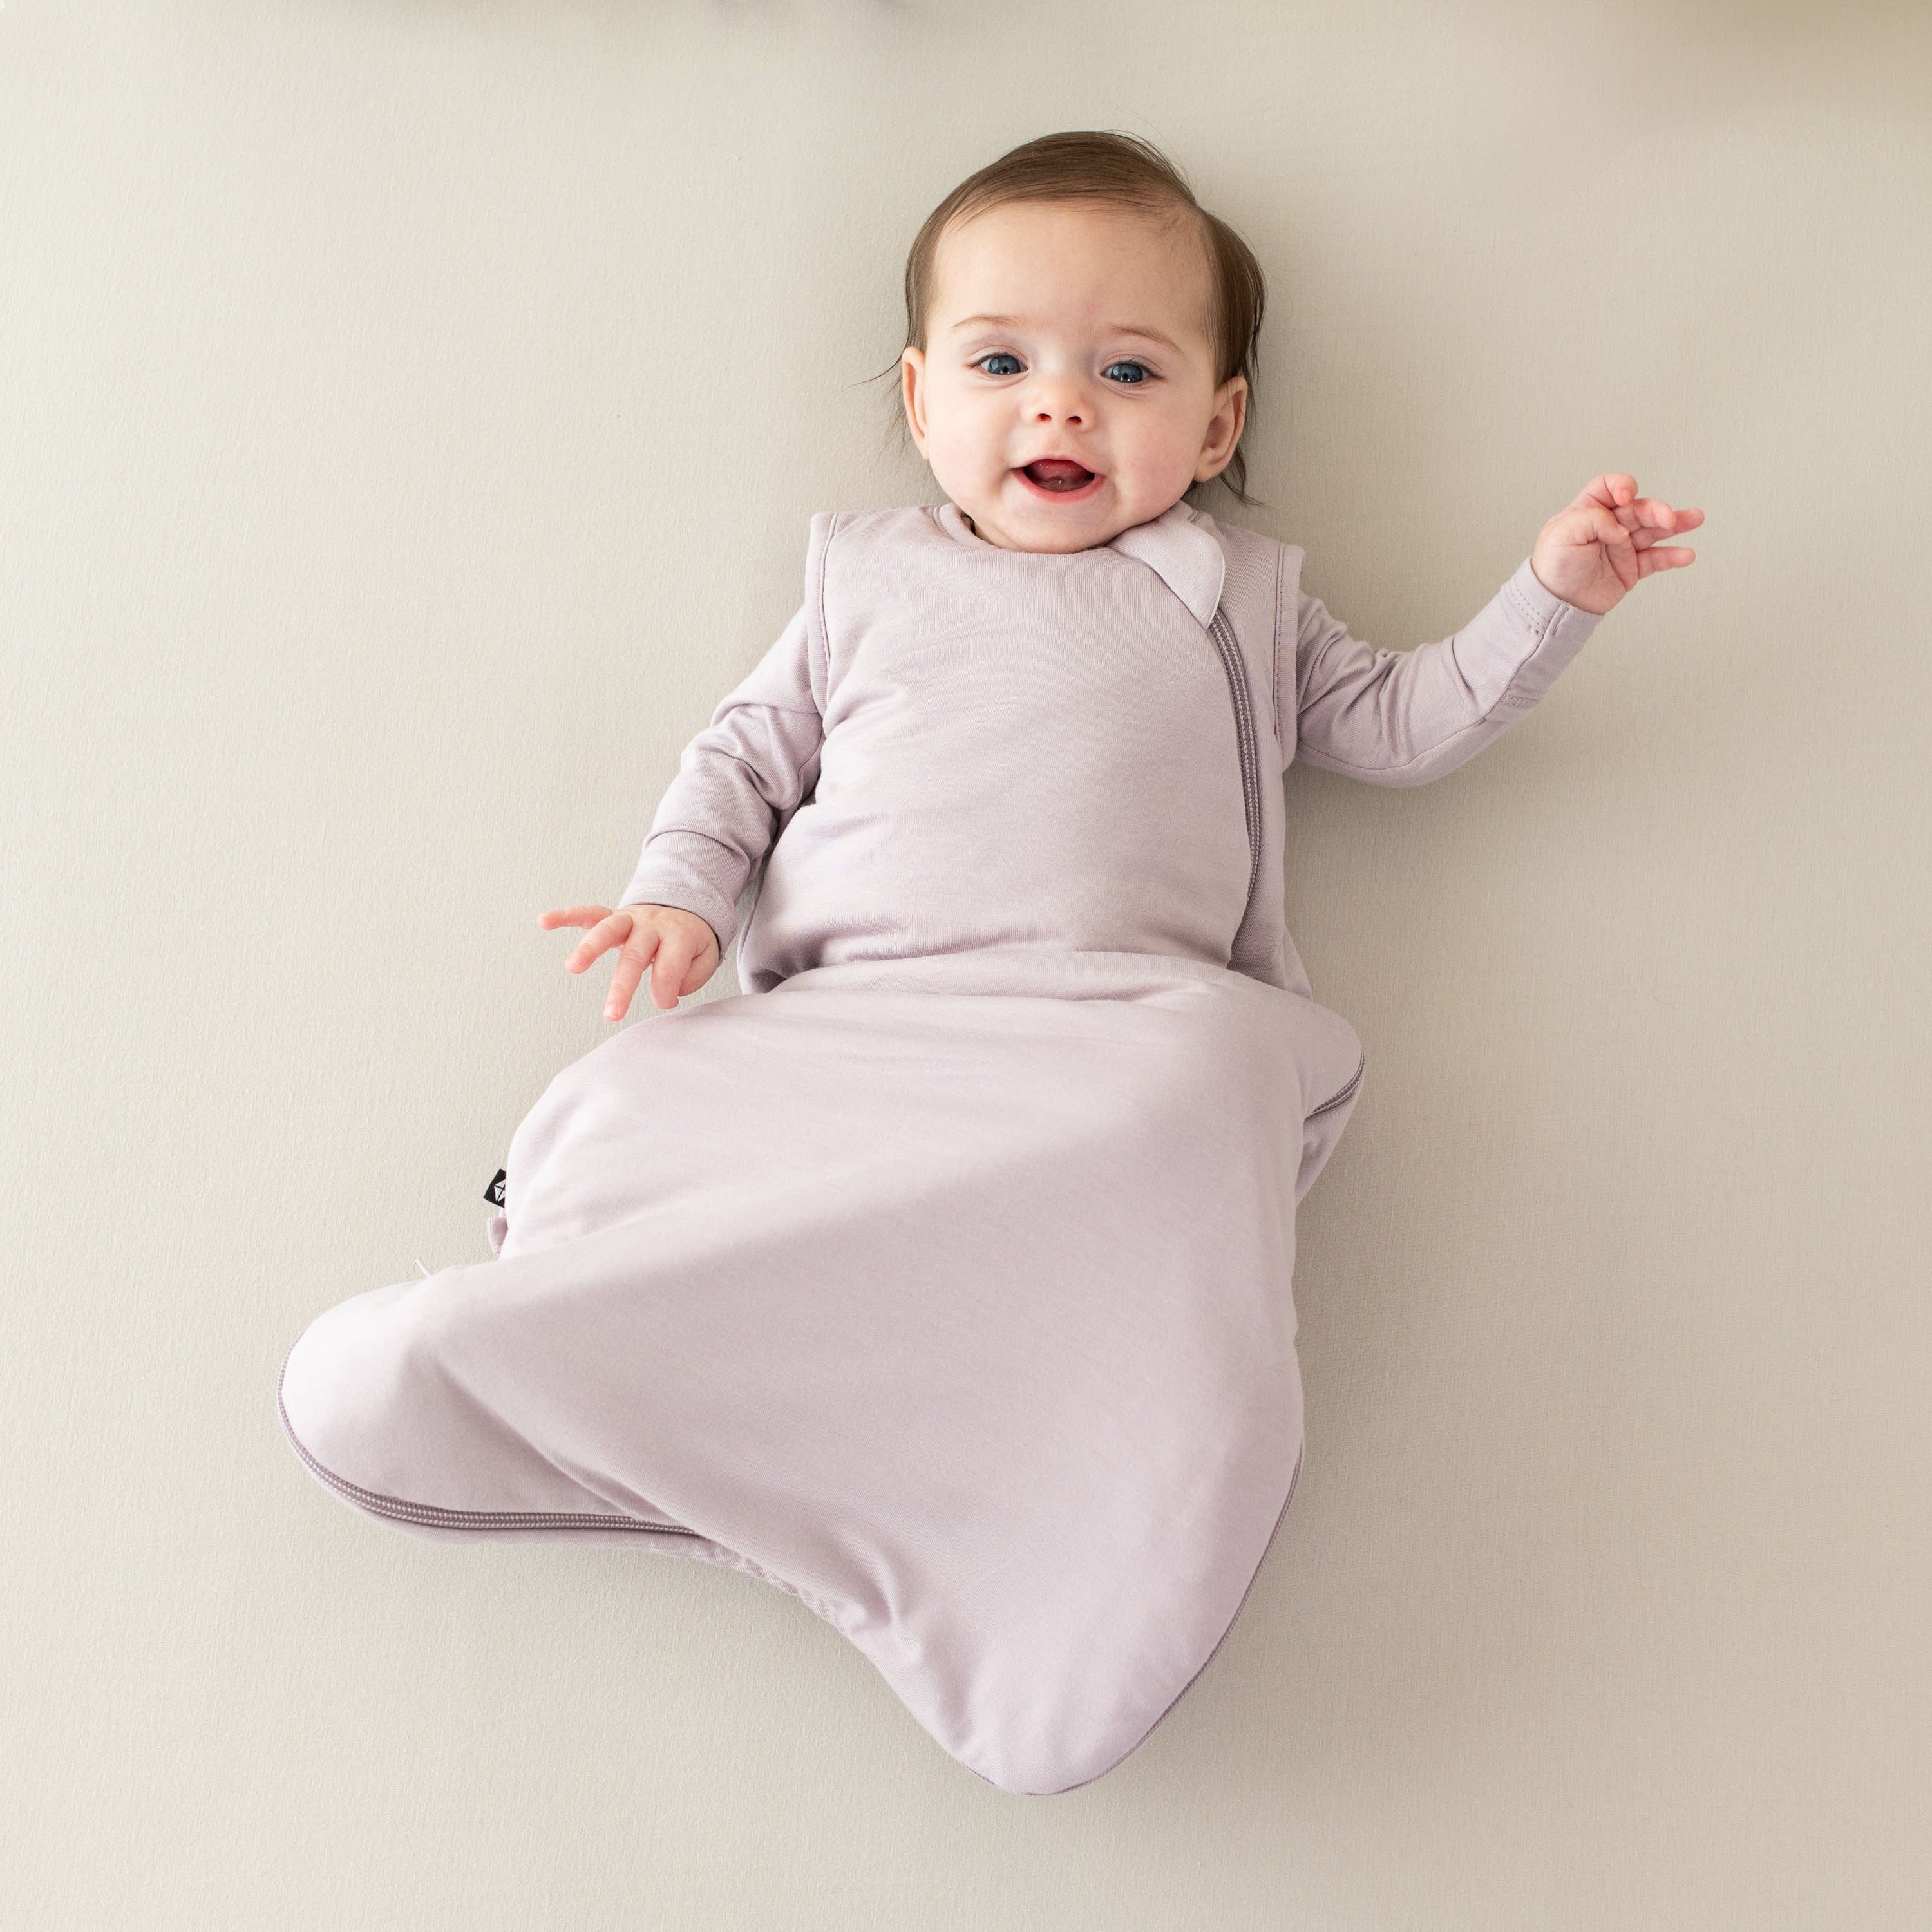 Infant wearing Kyte Baby Sleep Bag in Wisteria 1.0